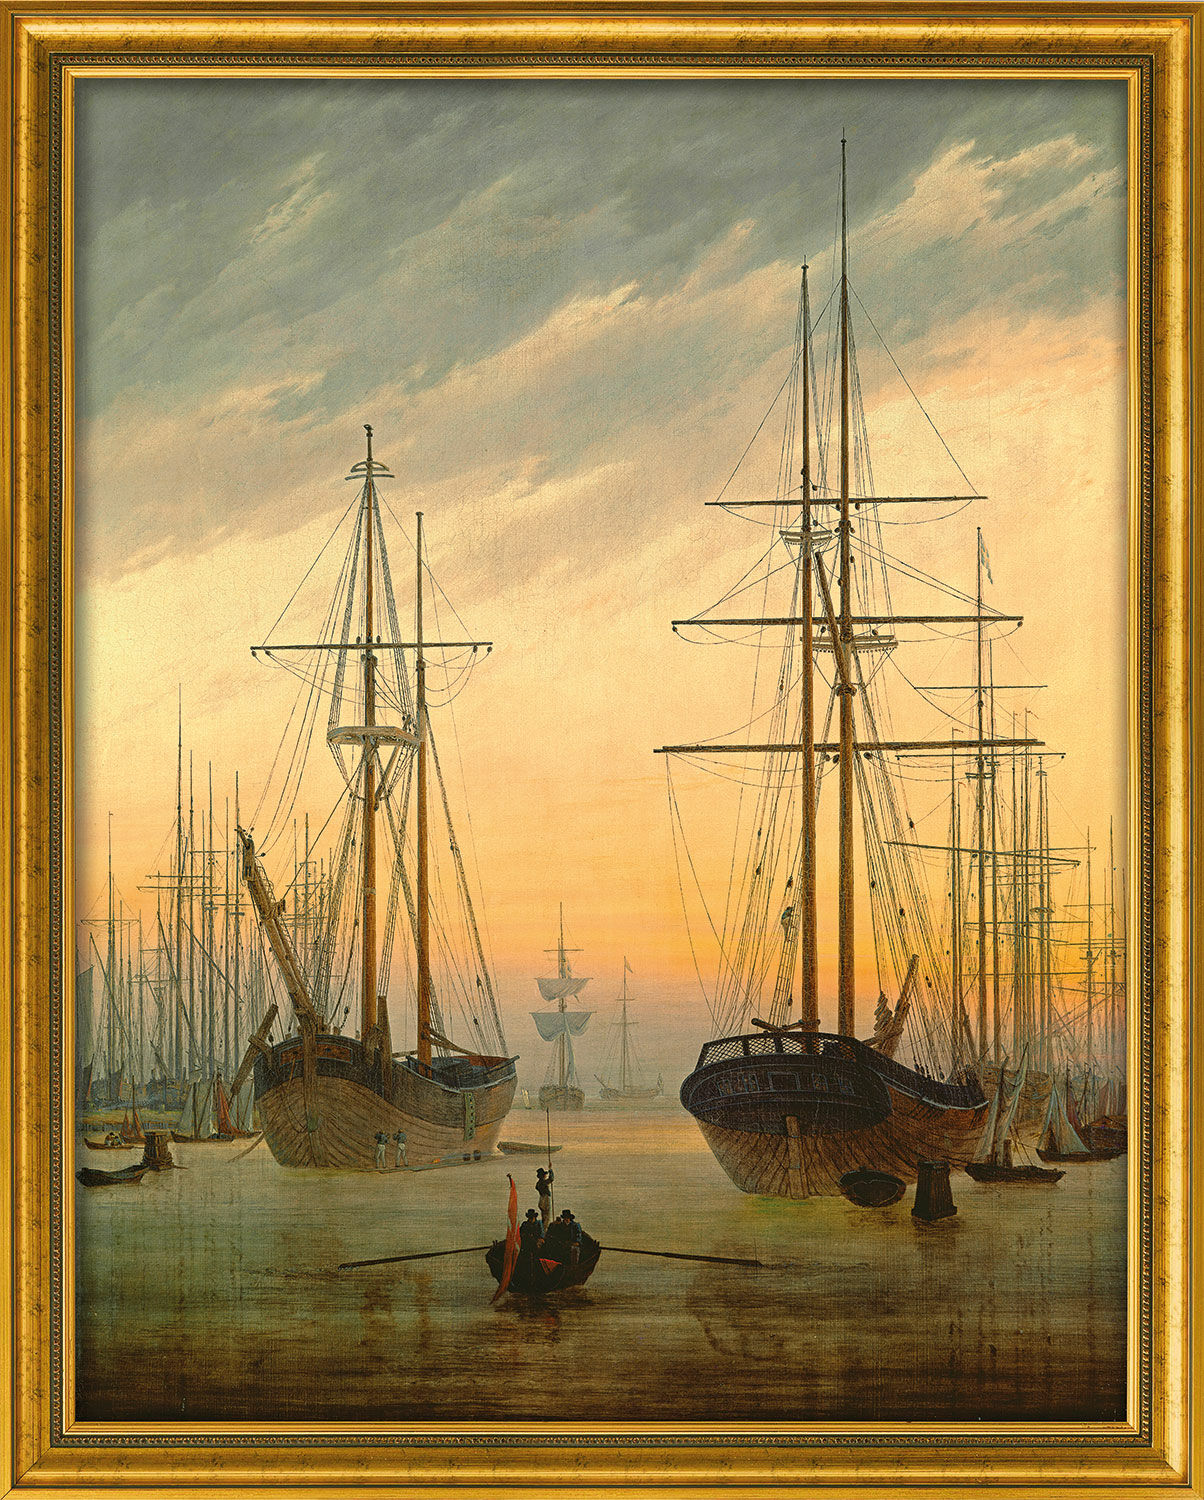 Billede "Udsigt over en havn" (ca. 1815/16), indrammet von Caspar David Friedrich